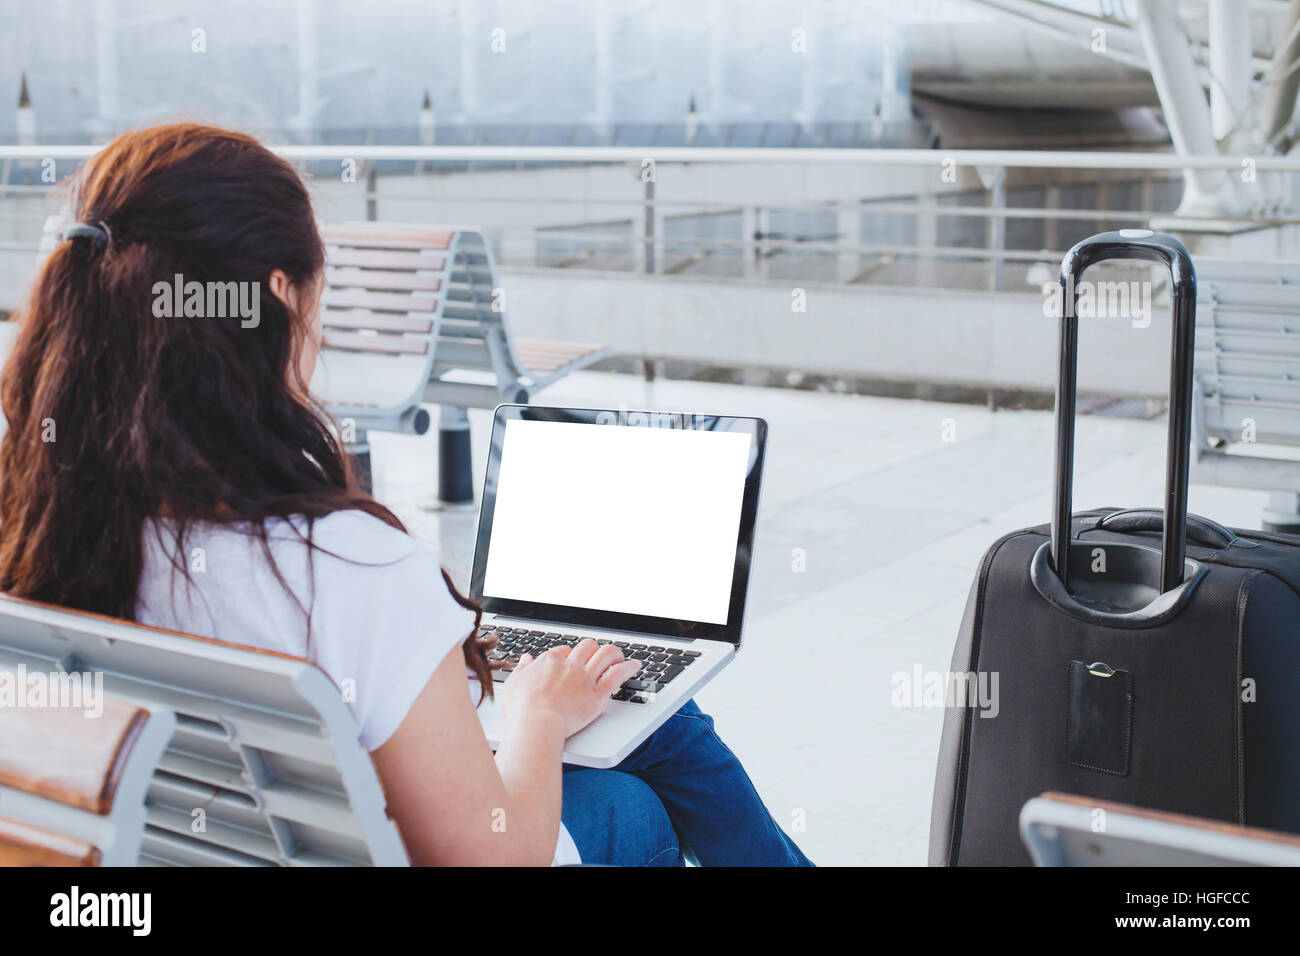 Frau mit Laptop-Computer im Flughafen, online-banking oder Web-Check-in Passagier Blick auf leere leerer Bildschirm Stockfoto